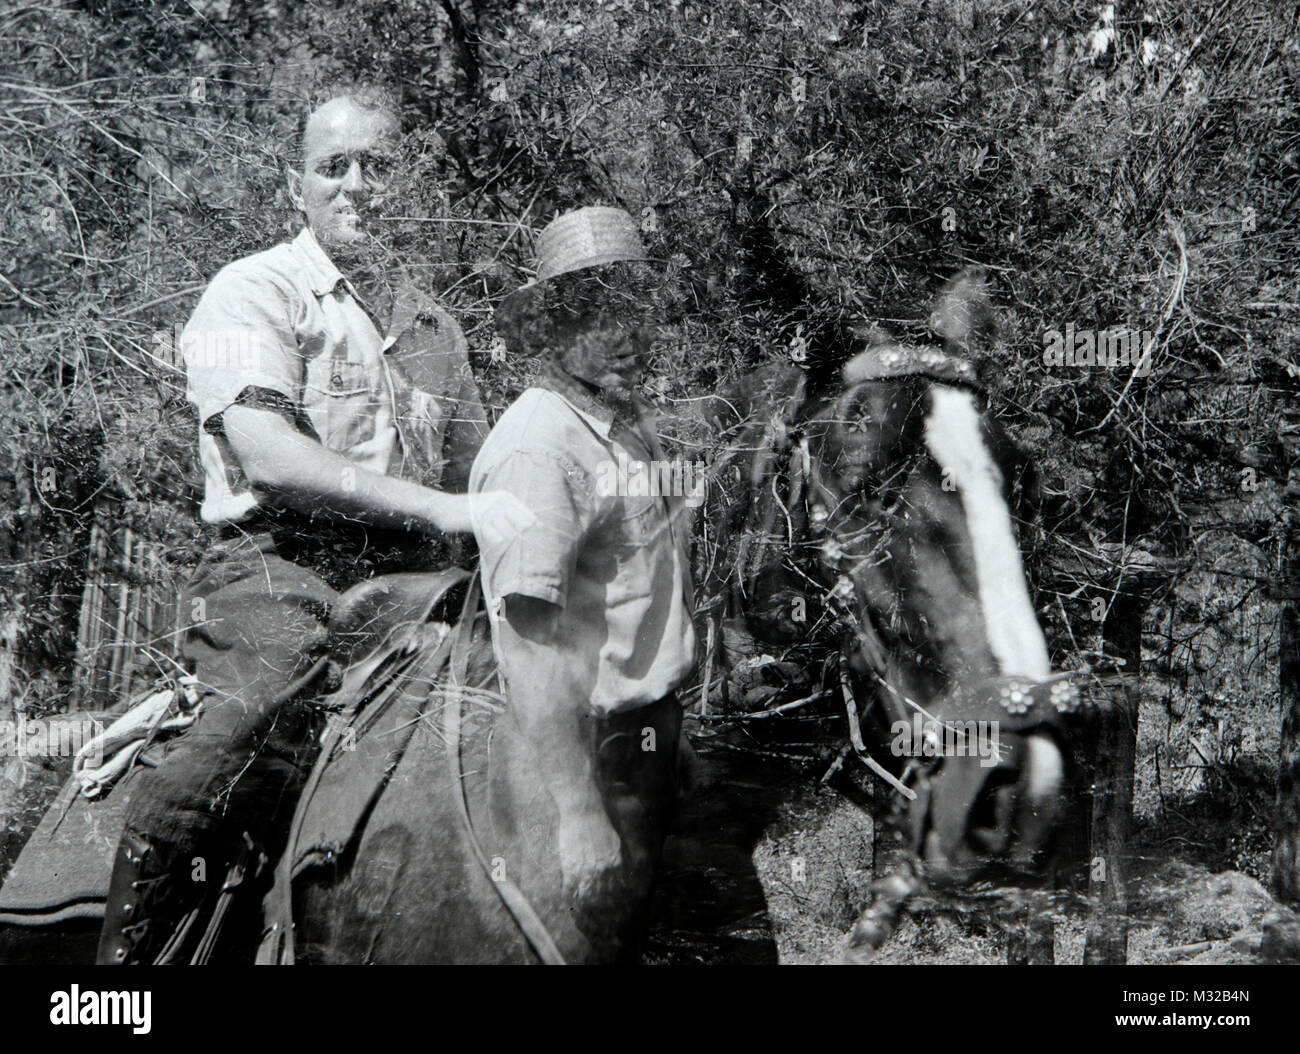 Versehentliche doppelte Belichtung von Mann und Pferd, Ca. 1950. Stockfoto